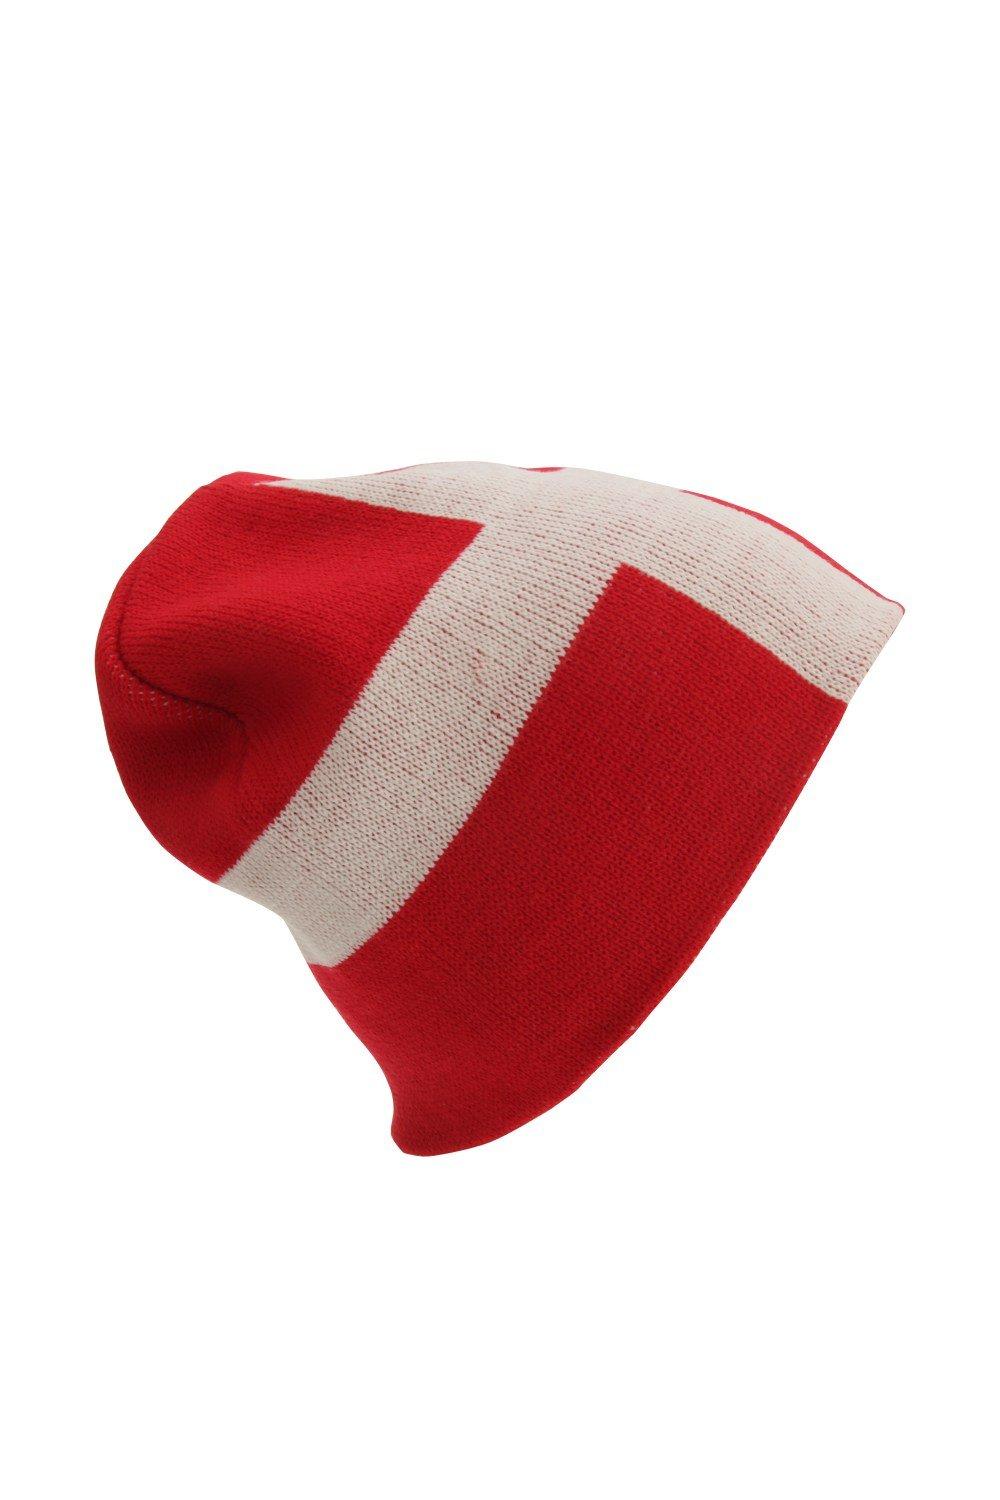 Зимняя шапка с флагом Дании Universal Textiles, красный шапка бини 100%акрил размер свободный зеленый